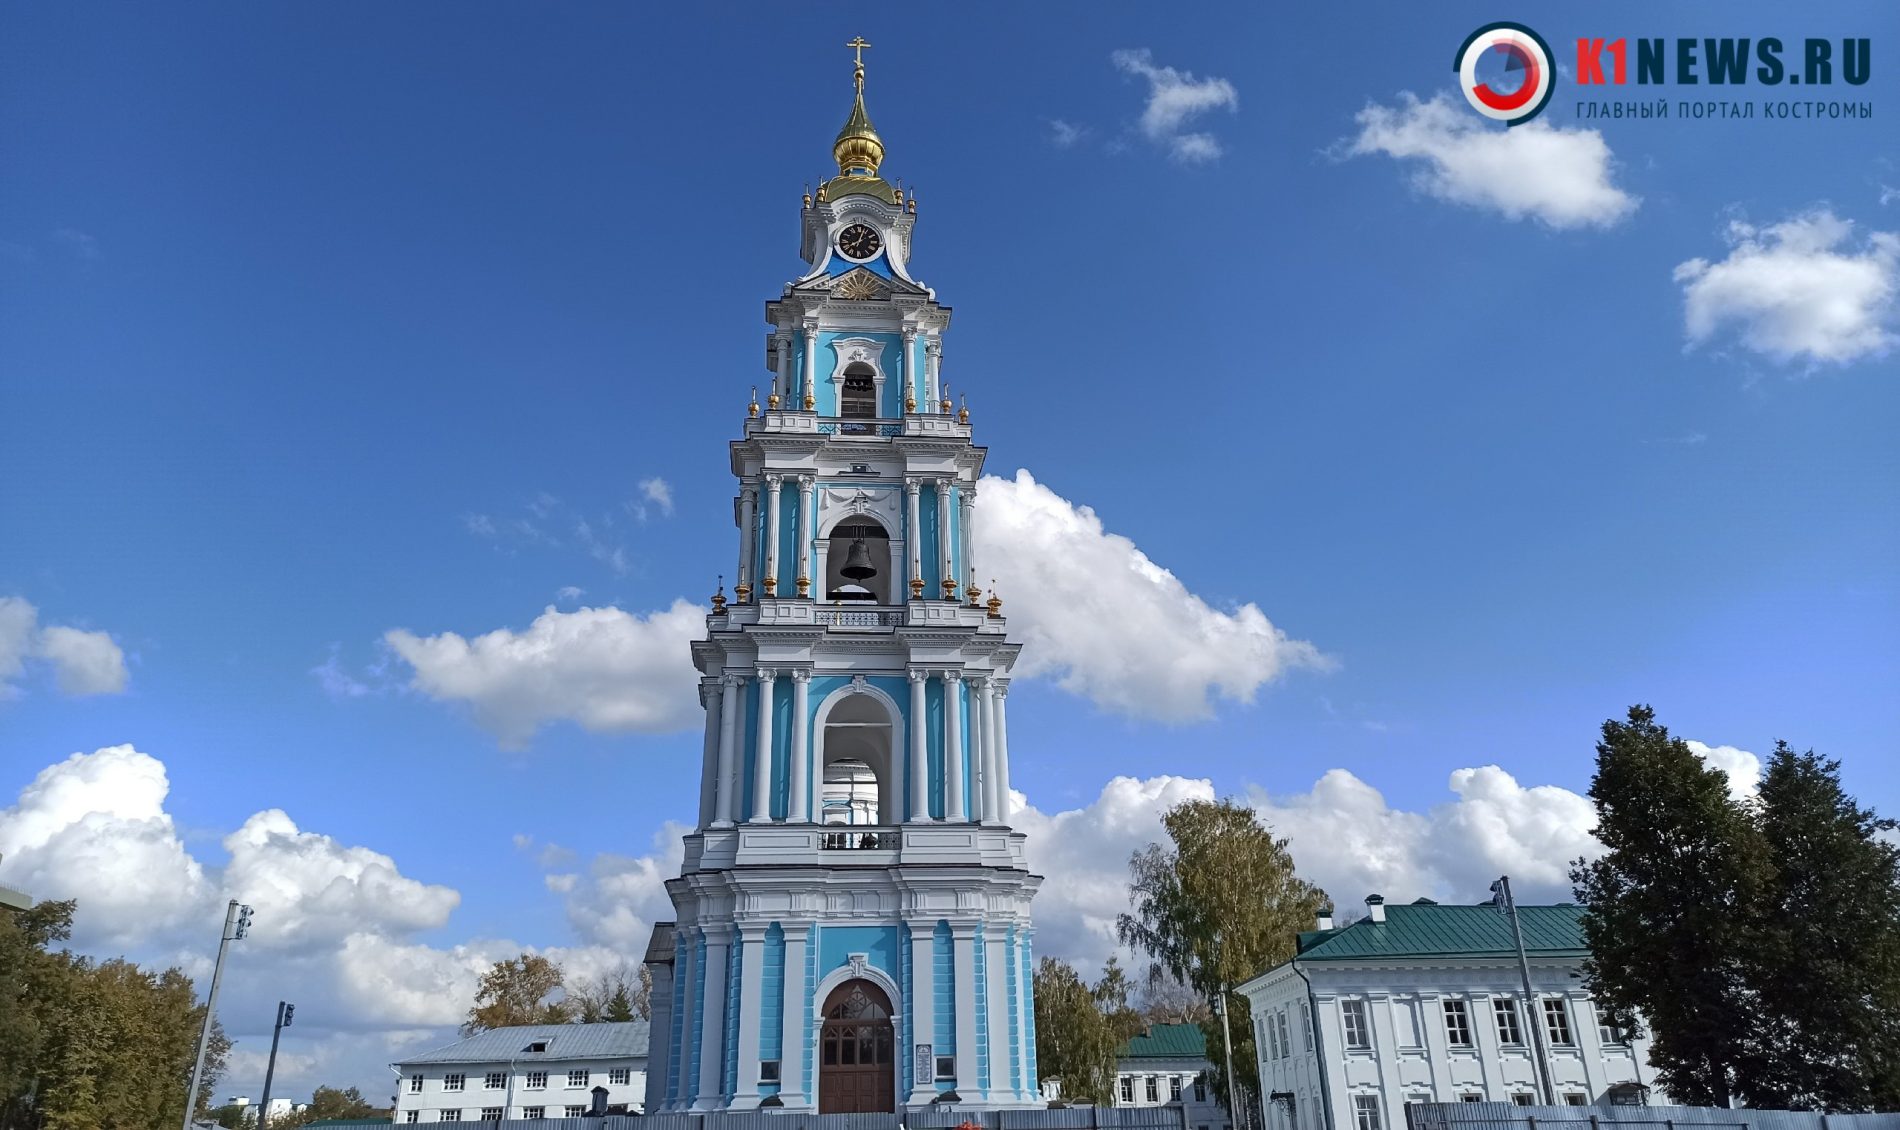 Патриарх Всея Руси Кирилл приедет в Кострому для освящения кремля